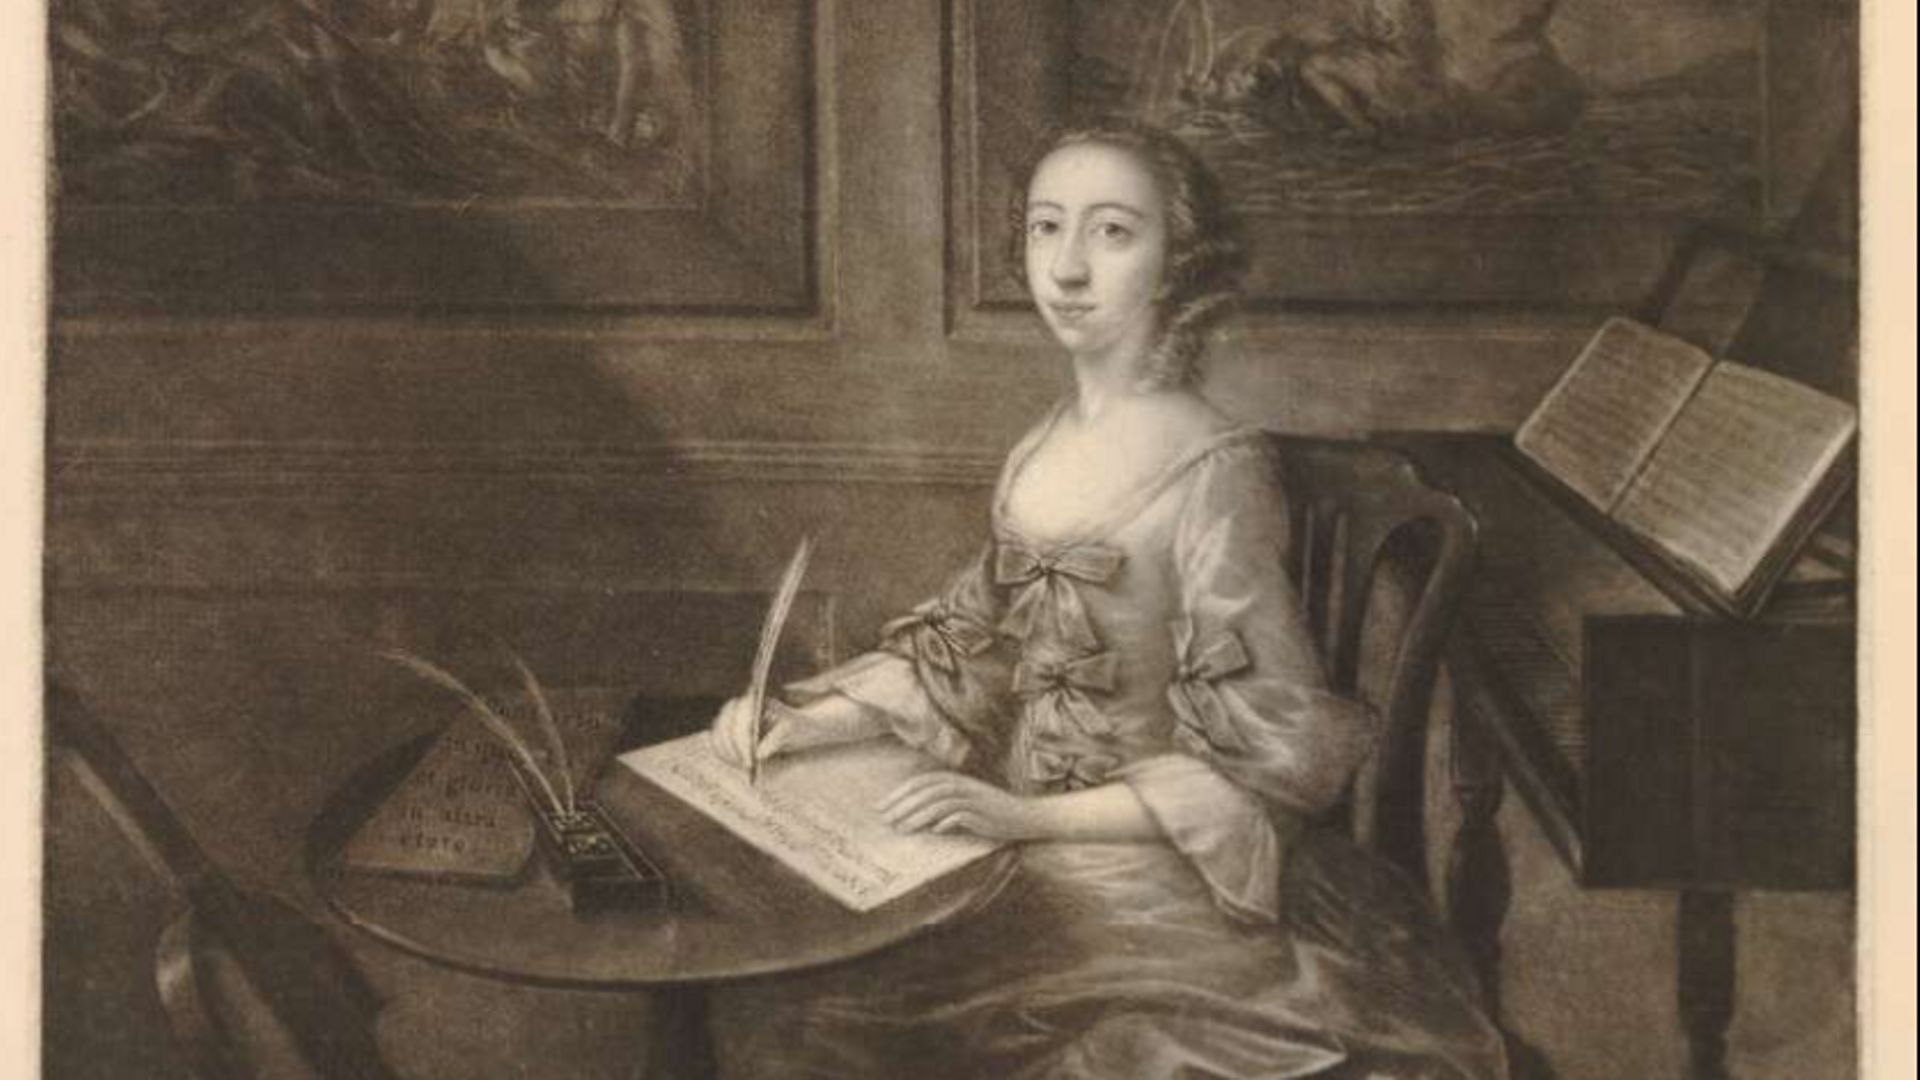 Portrait d’Elizabetta de Gambarini, de trois quarts assise à une table ronde devant un clavecin, levant les yeux d’une feuille de musique qu’elle écrit, avec une viole de gambe appuyée à gauche et des images classiques sur le mur derrière, l’un montrant u